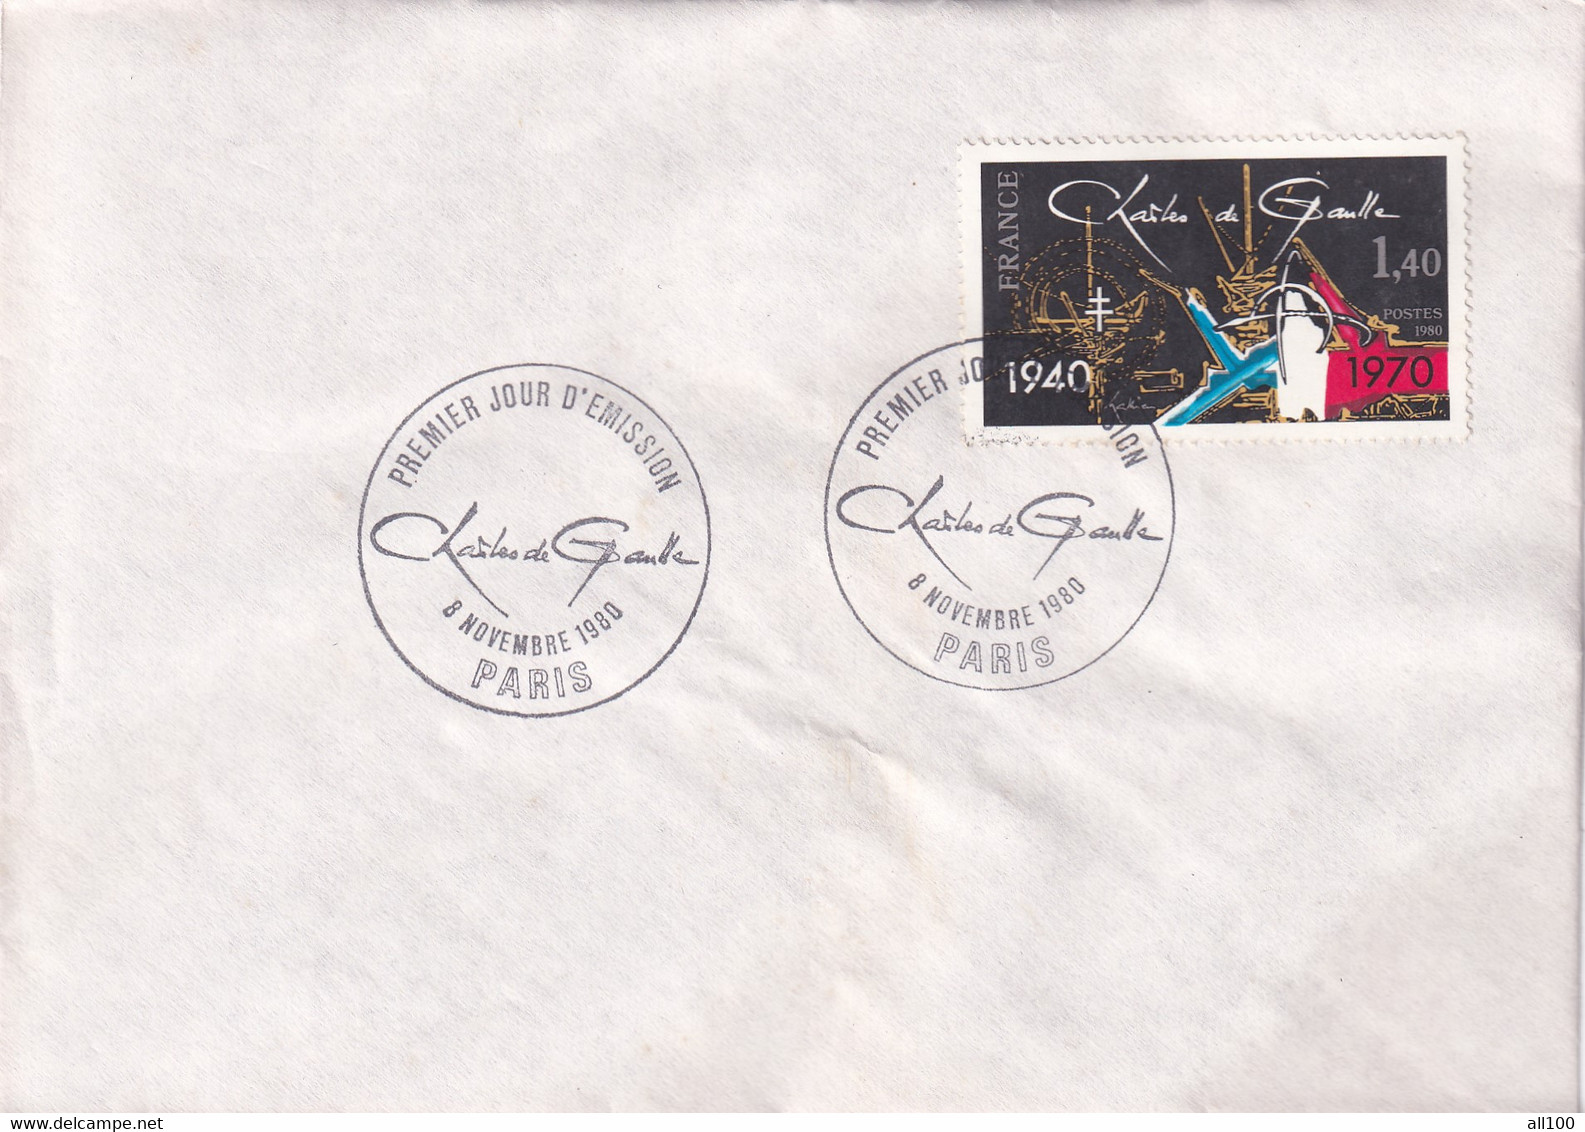 A21870 - Premier Jour D'Emission Charles De Gaulle Paris Cover Envelope Unused 1980 Stamp France - Lettres & Documents